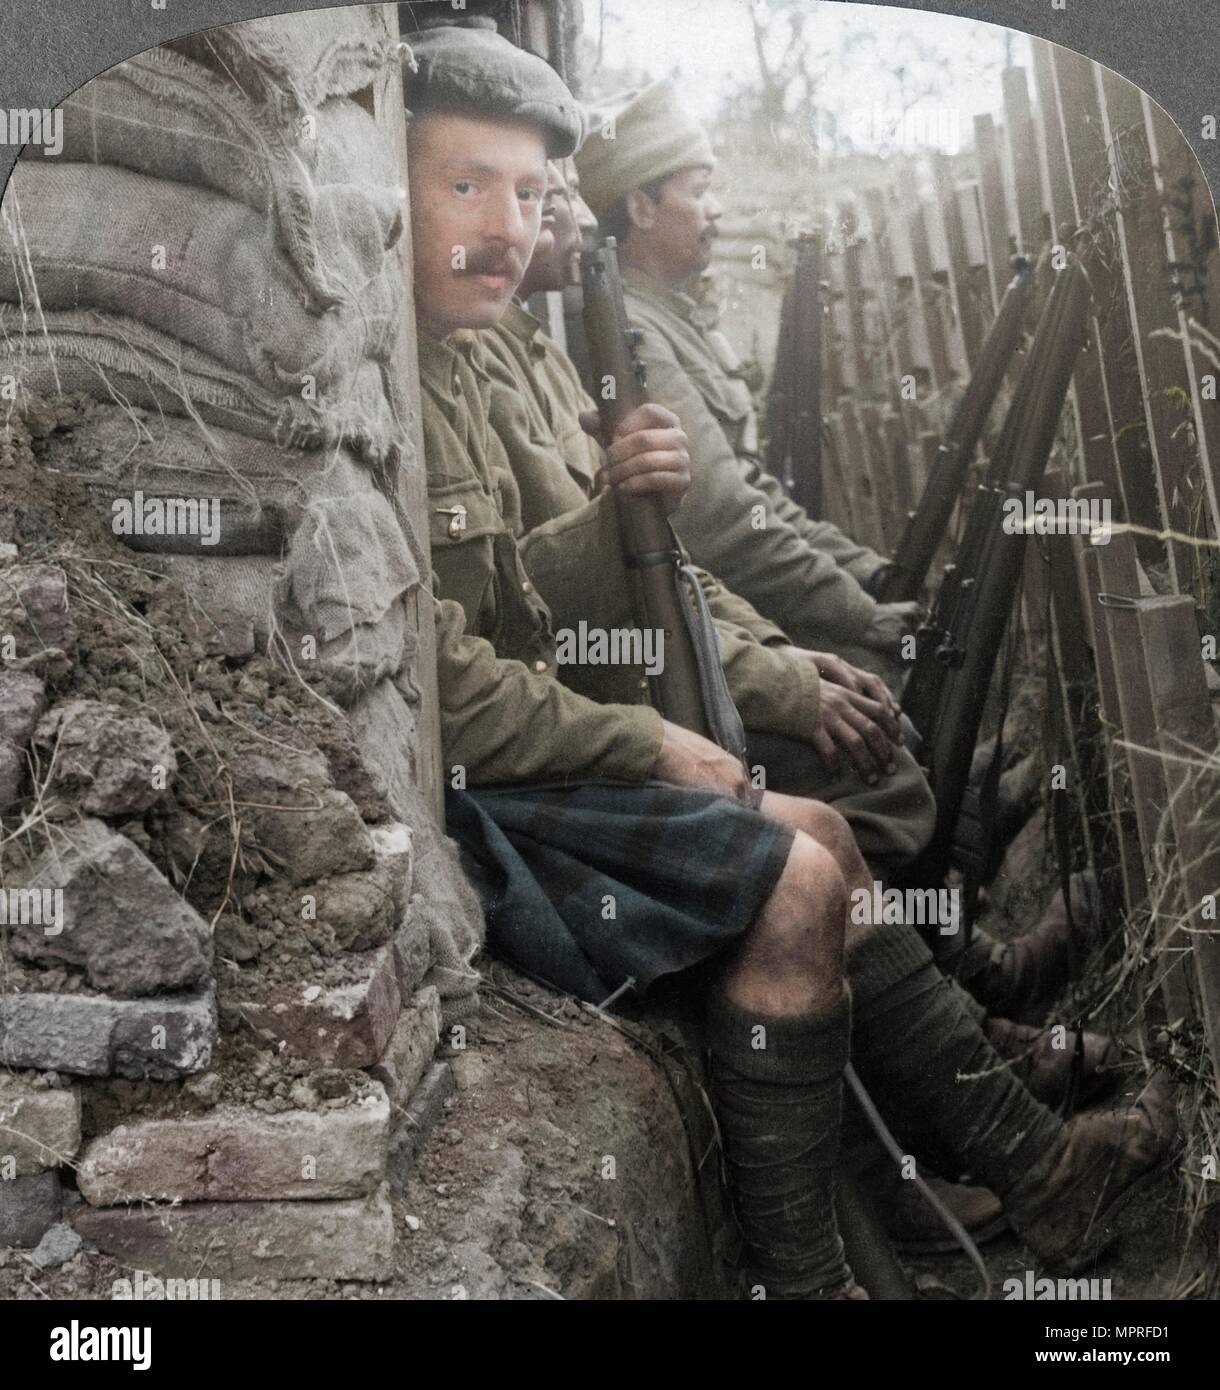 Des soldats indiens dans les tranchées, la Première Guerre mondiale, 1914-1918. Artiste : voyages réalistes des éditeurs. Banque D'Images